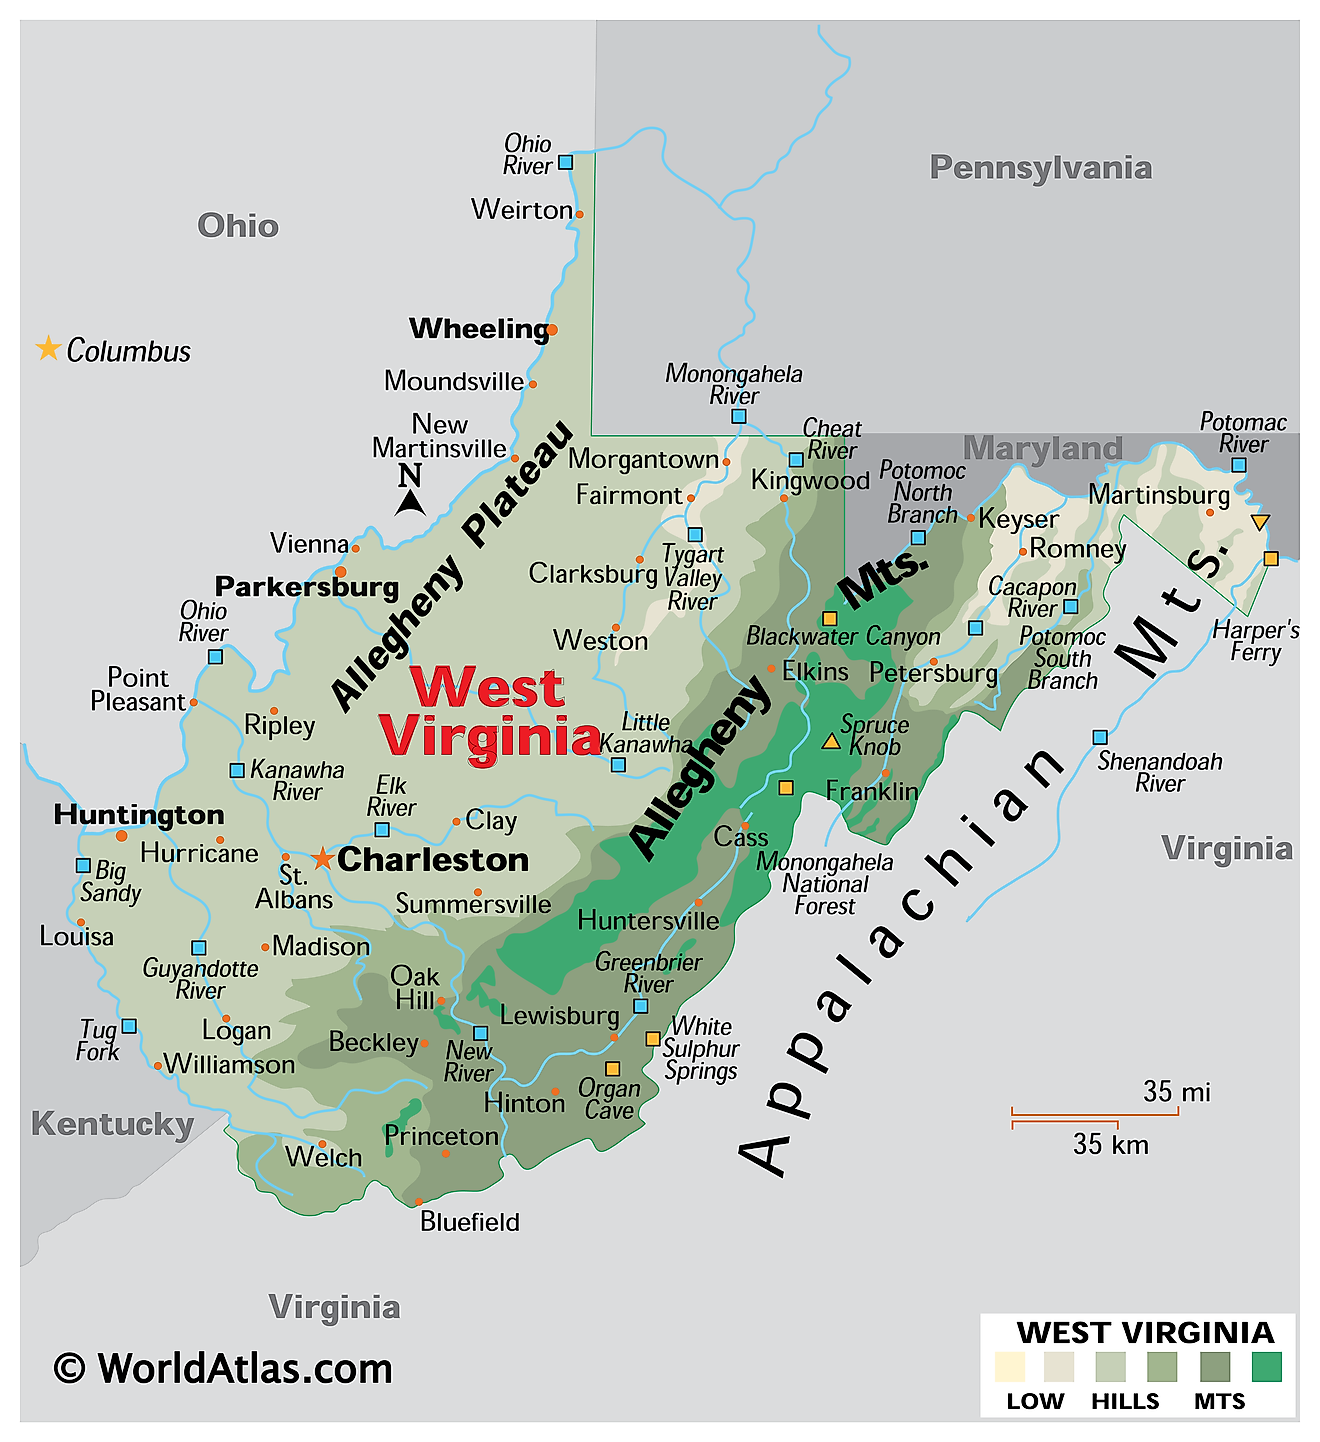 fysisk kort over vest Virginia. Det viser de fysiske træk ved vest Virginia inklusive dets bjergkæder, plateauer og større floder.